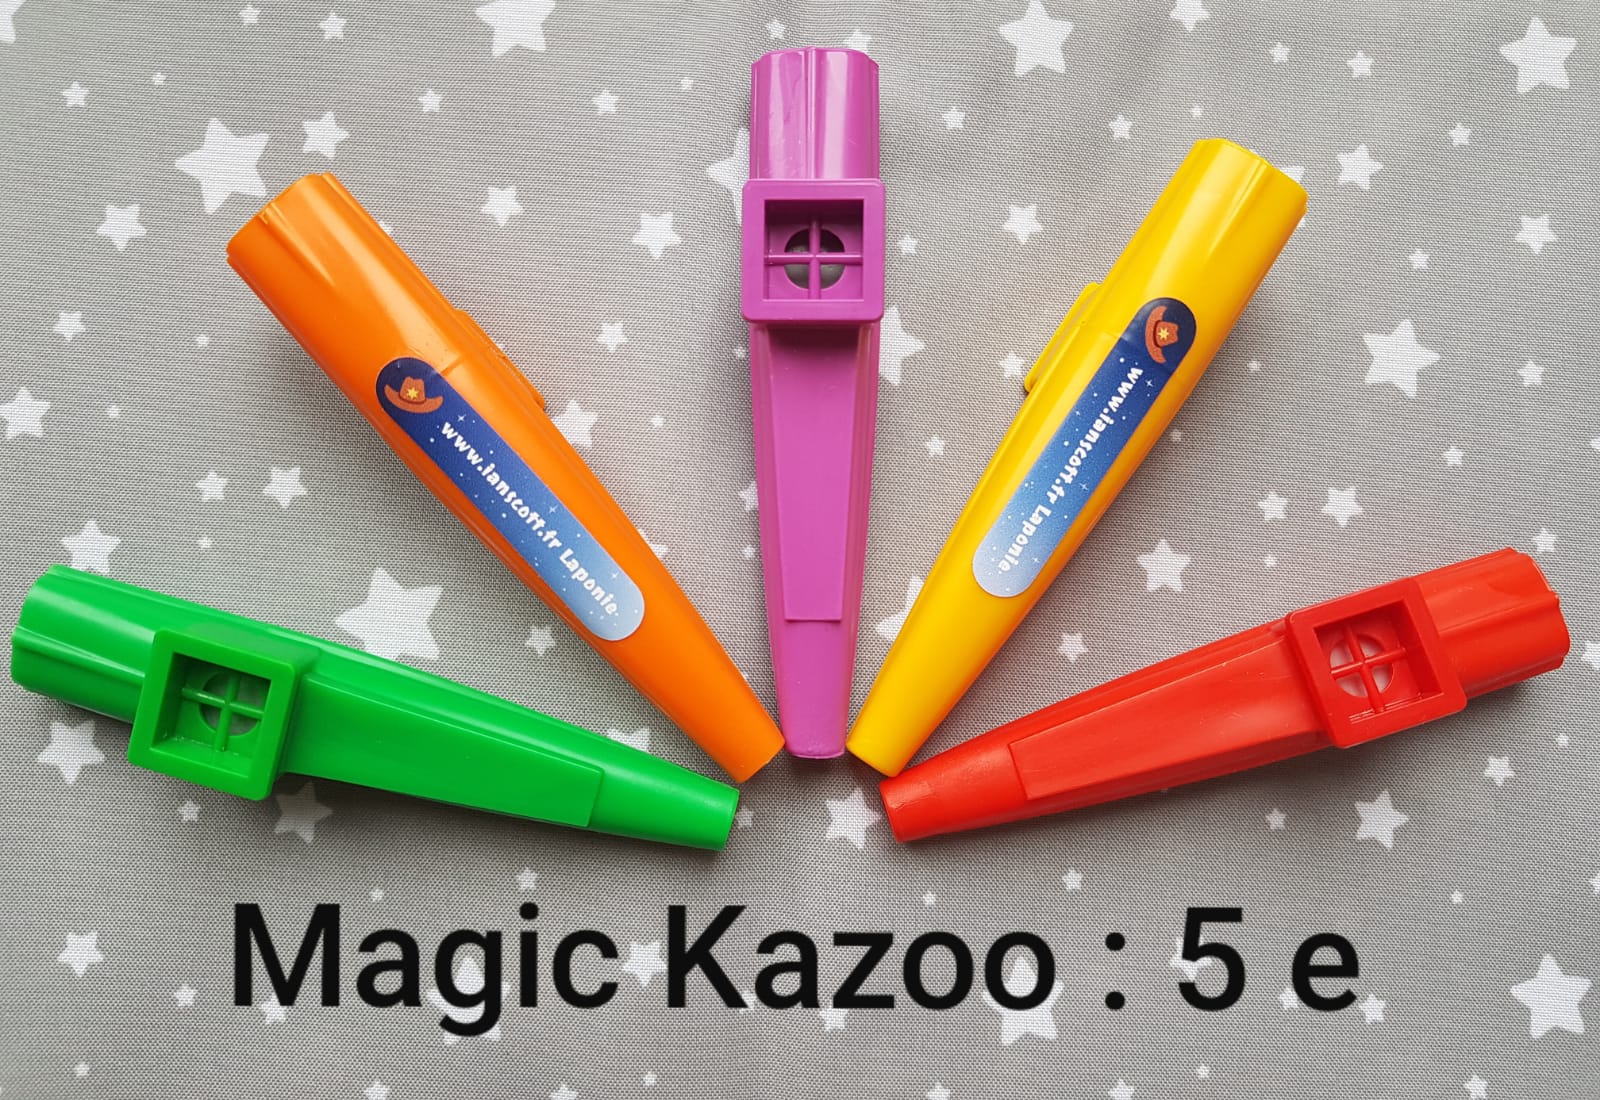 Les Magic Kazoo sont en vente sur le site !